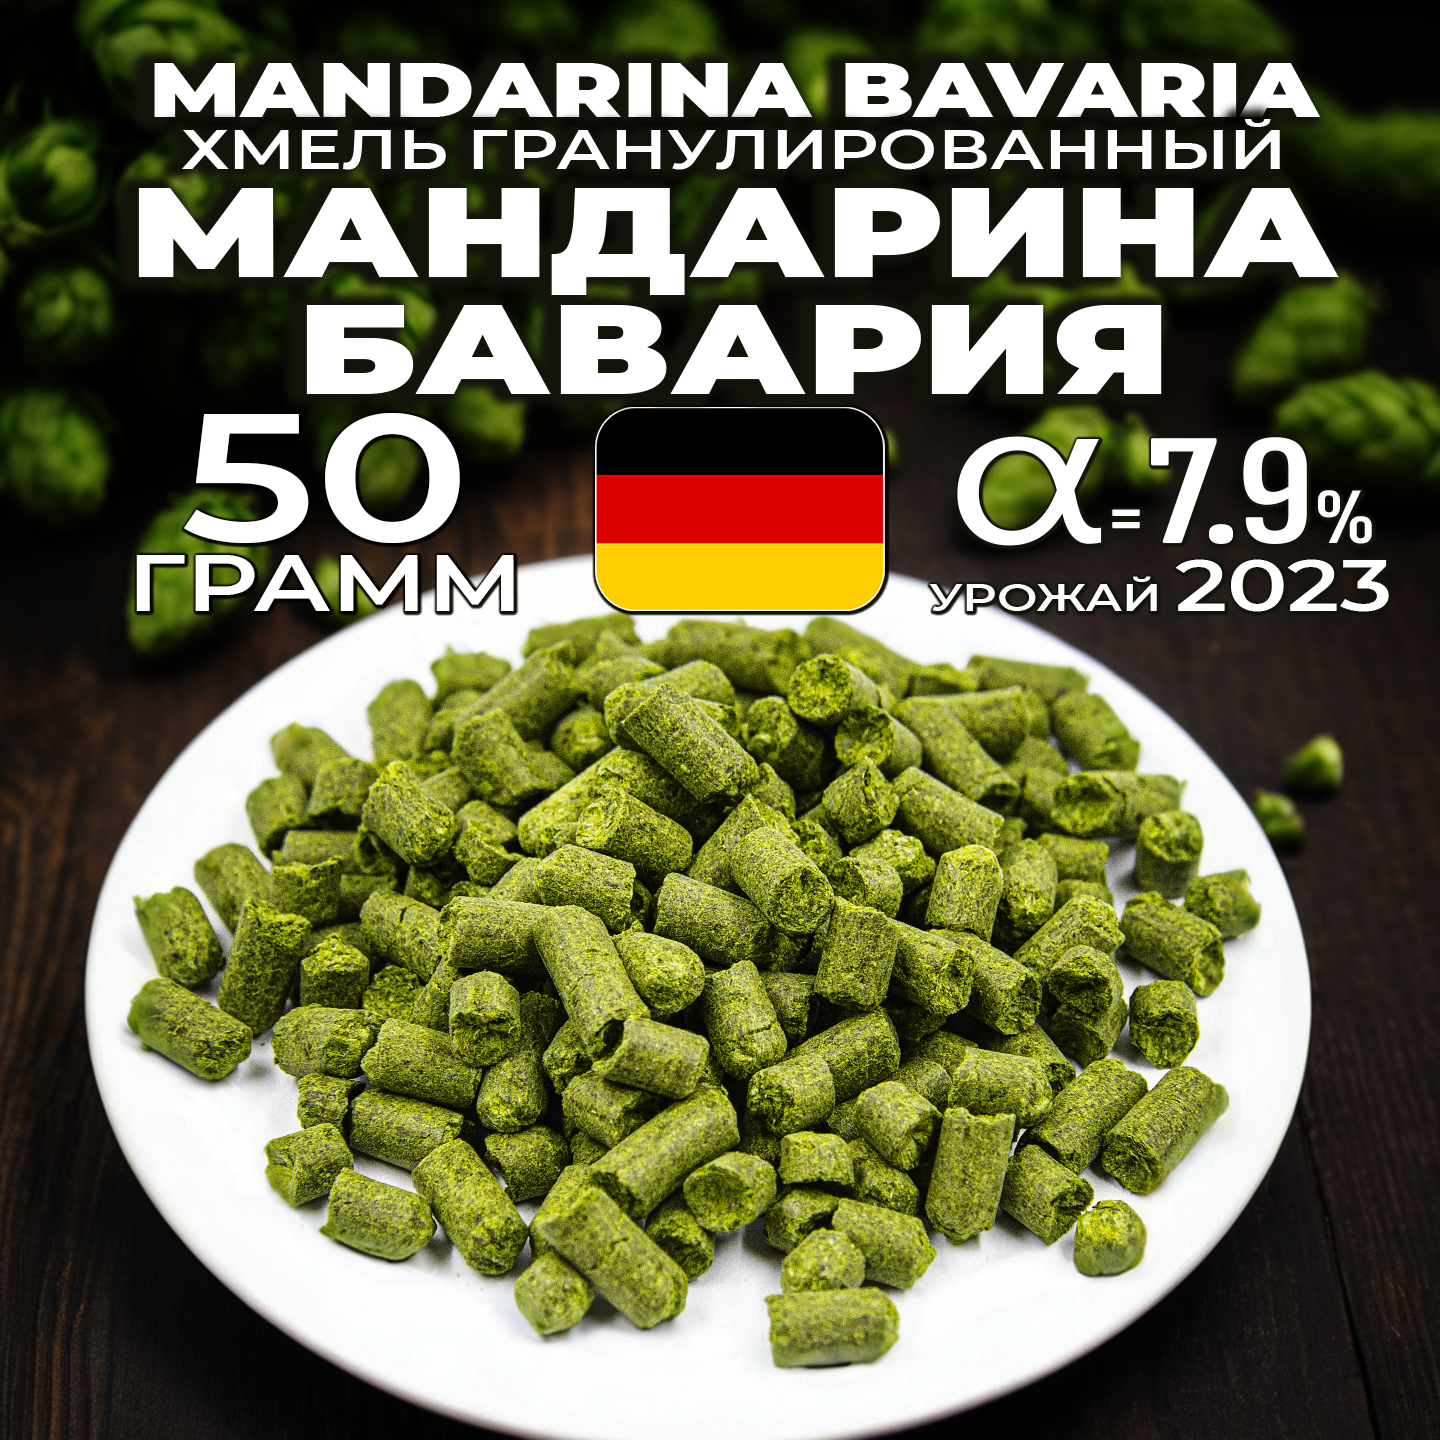 Хмель для пива Мандарина Бавария (Mandarina Bavaria) гранулированный, ароматный , 50 г